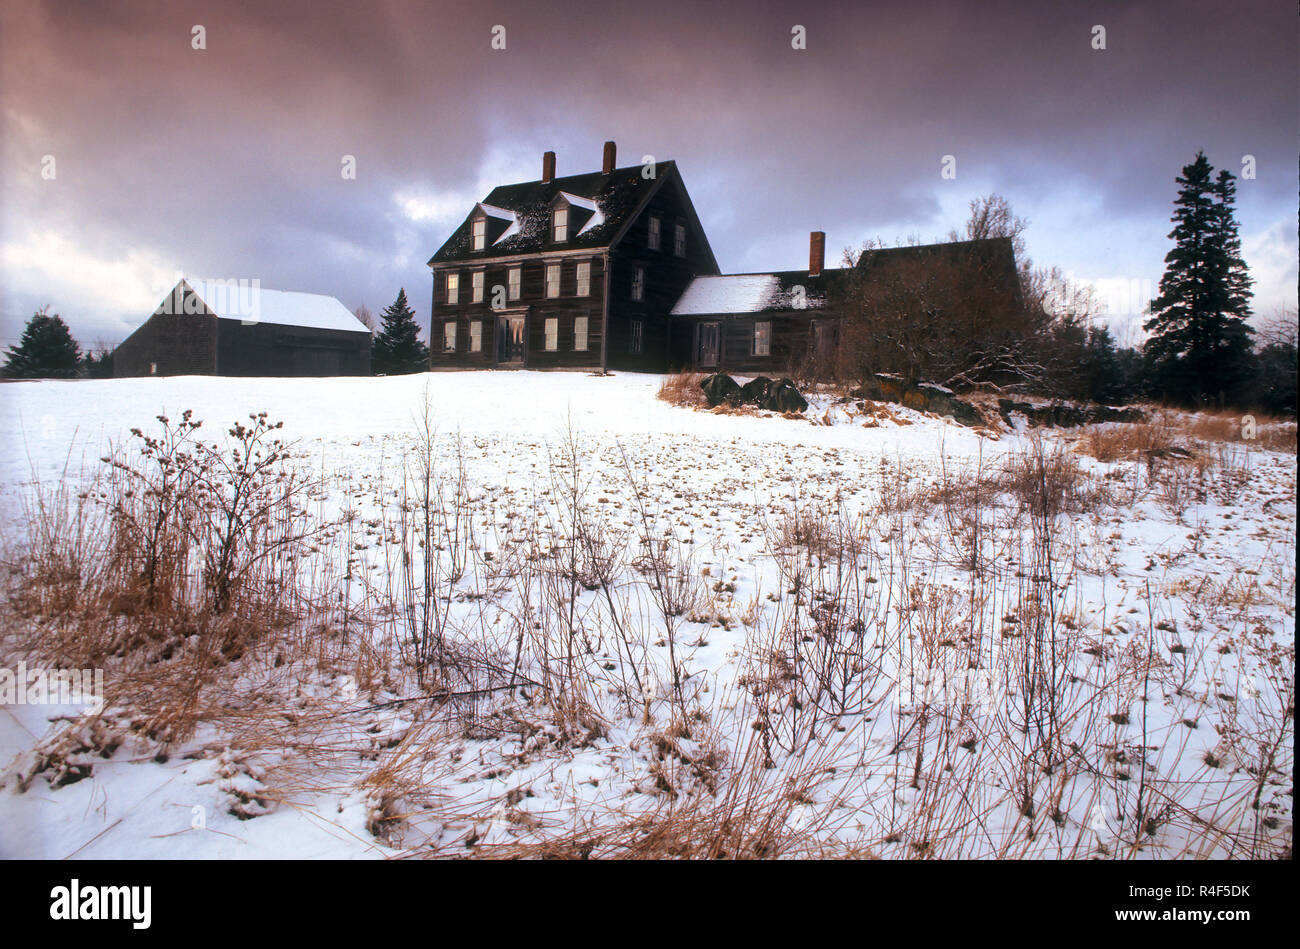 L'Olson maison à Cushing, Maine où l'artiste Andrew Wyeth peint depuis de nombreuses années. L'emplacement de la célèbre peinture Christina's World. Banque D'Images